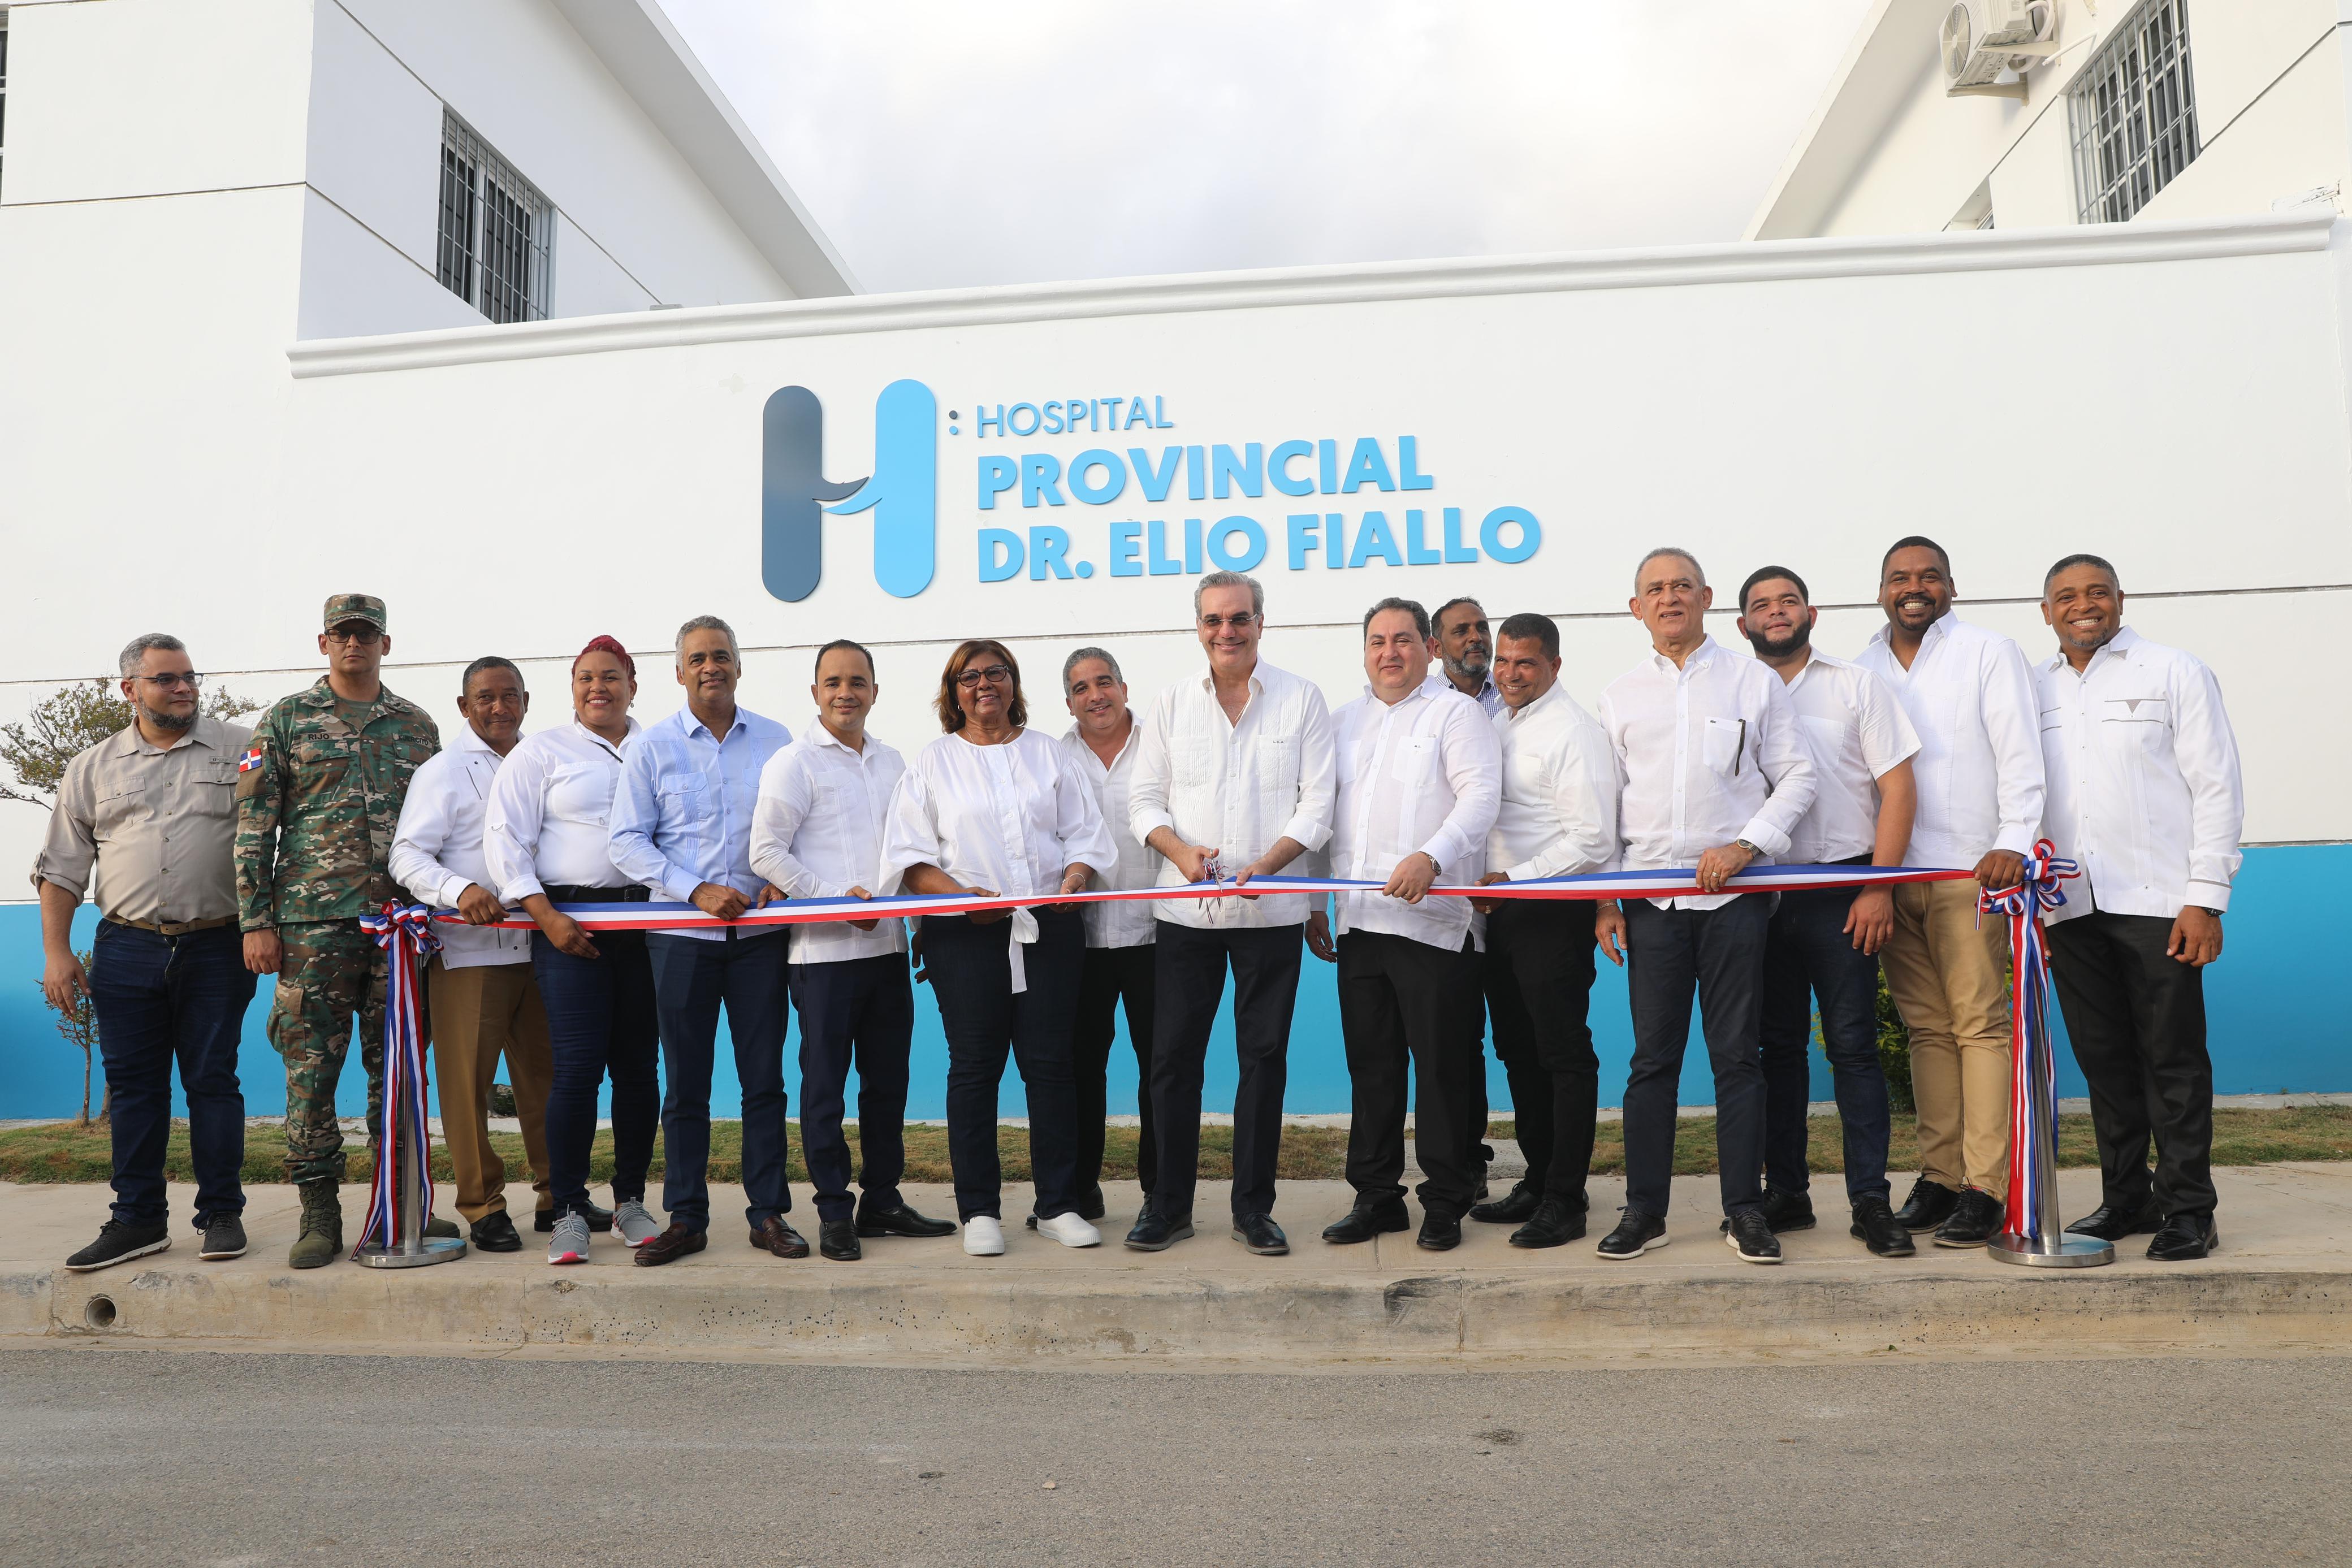 REPÚBLICA DOMINICANA: Presidente Abinader entrega Hospital Provincial Dr. Elio Fiallo y Centro de Primer Nivel en Pedernales